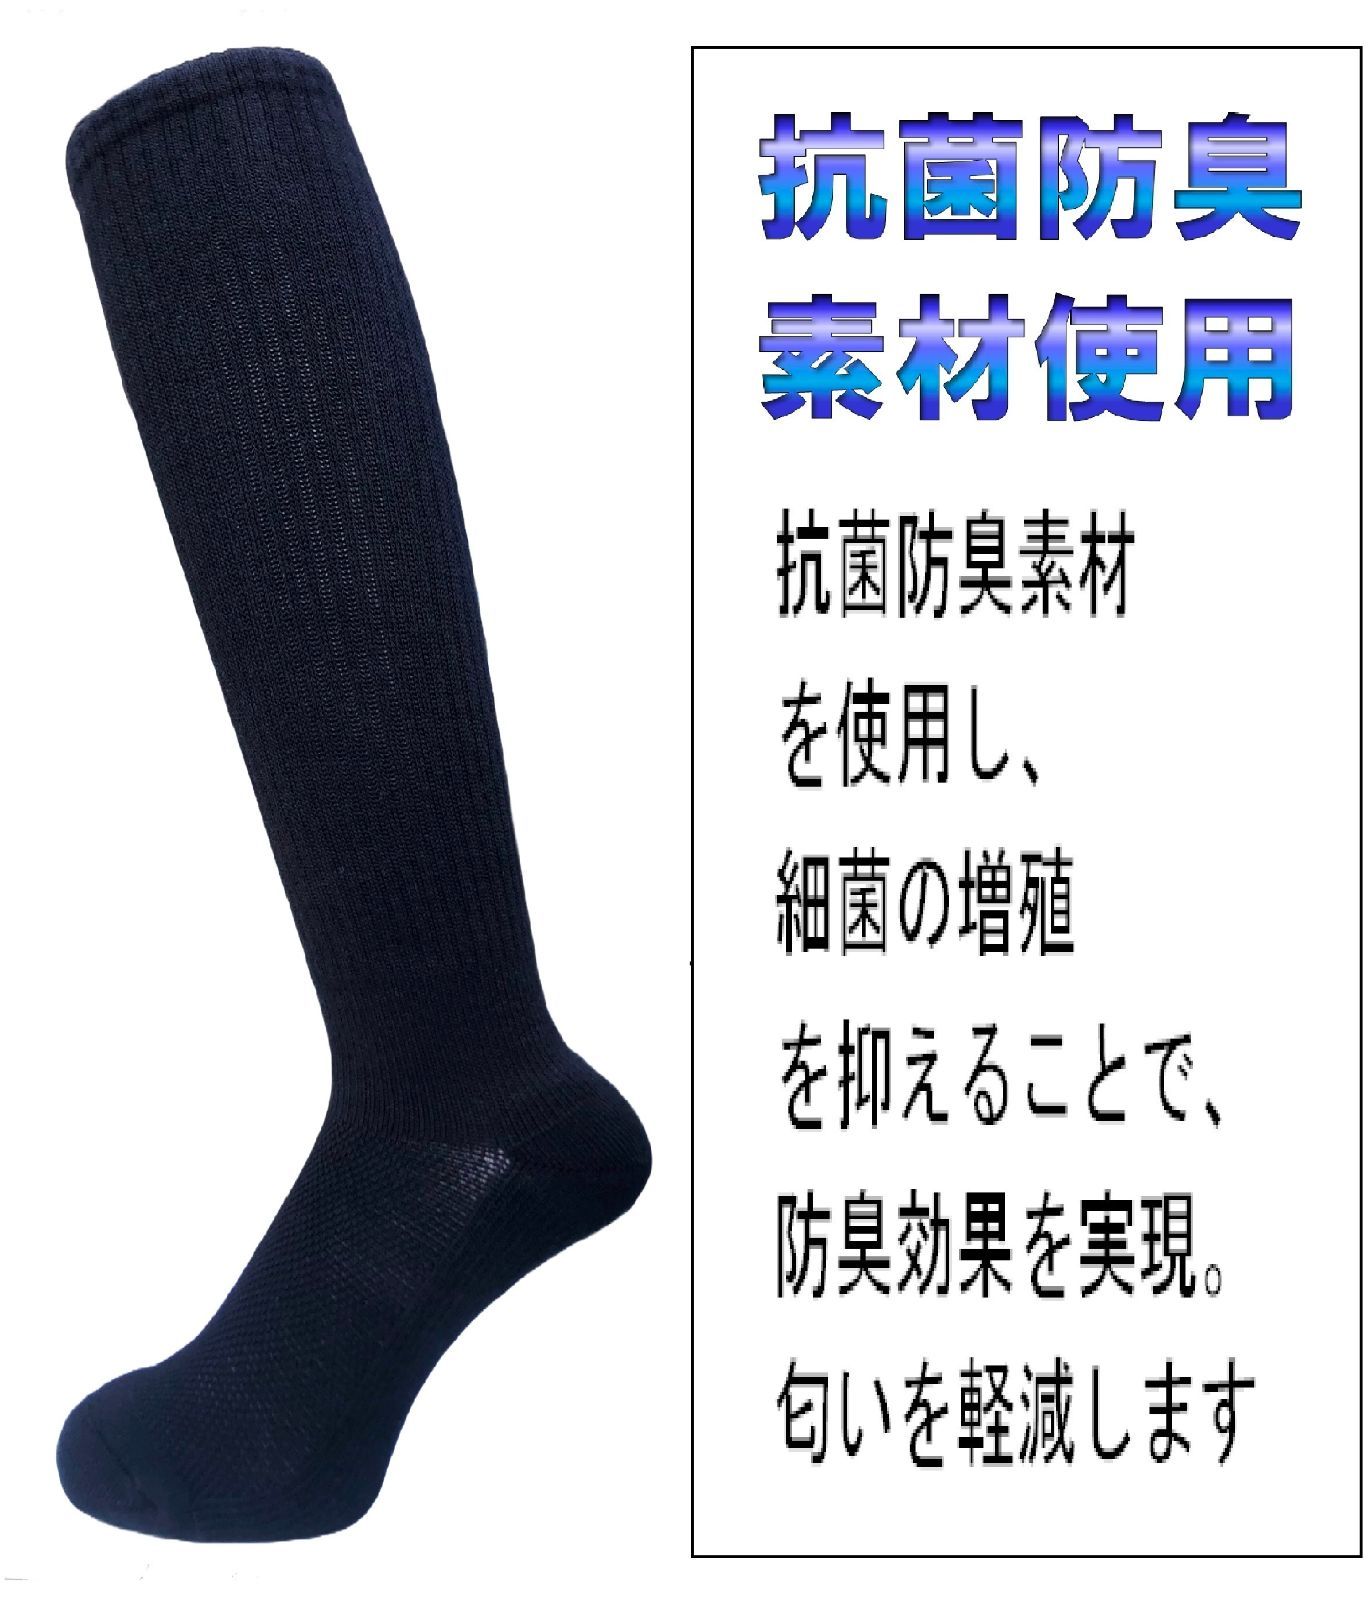 日本製 バレーボールソックス 23-25cm 2足1セット 5カラー 抗菌防臭